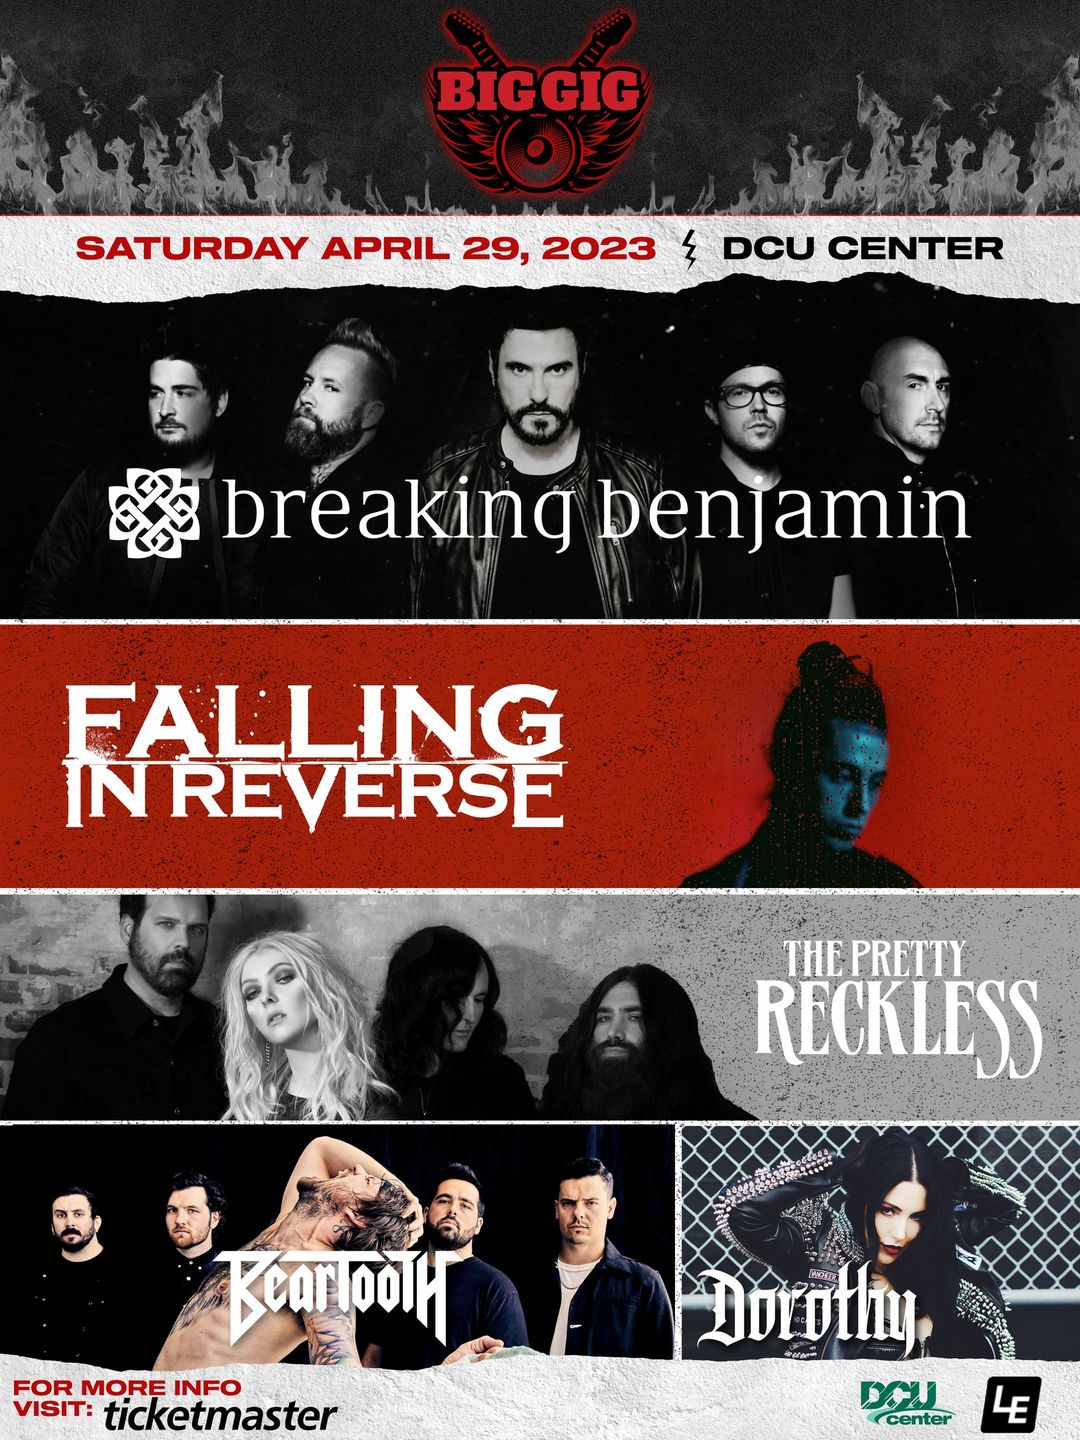 The Big Gig Breaking Benjamin at DCU Center 29 April 2023 Falling